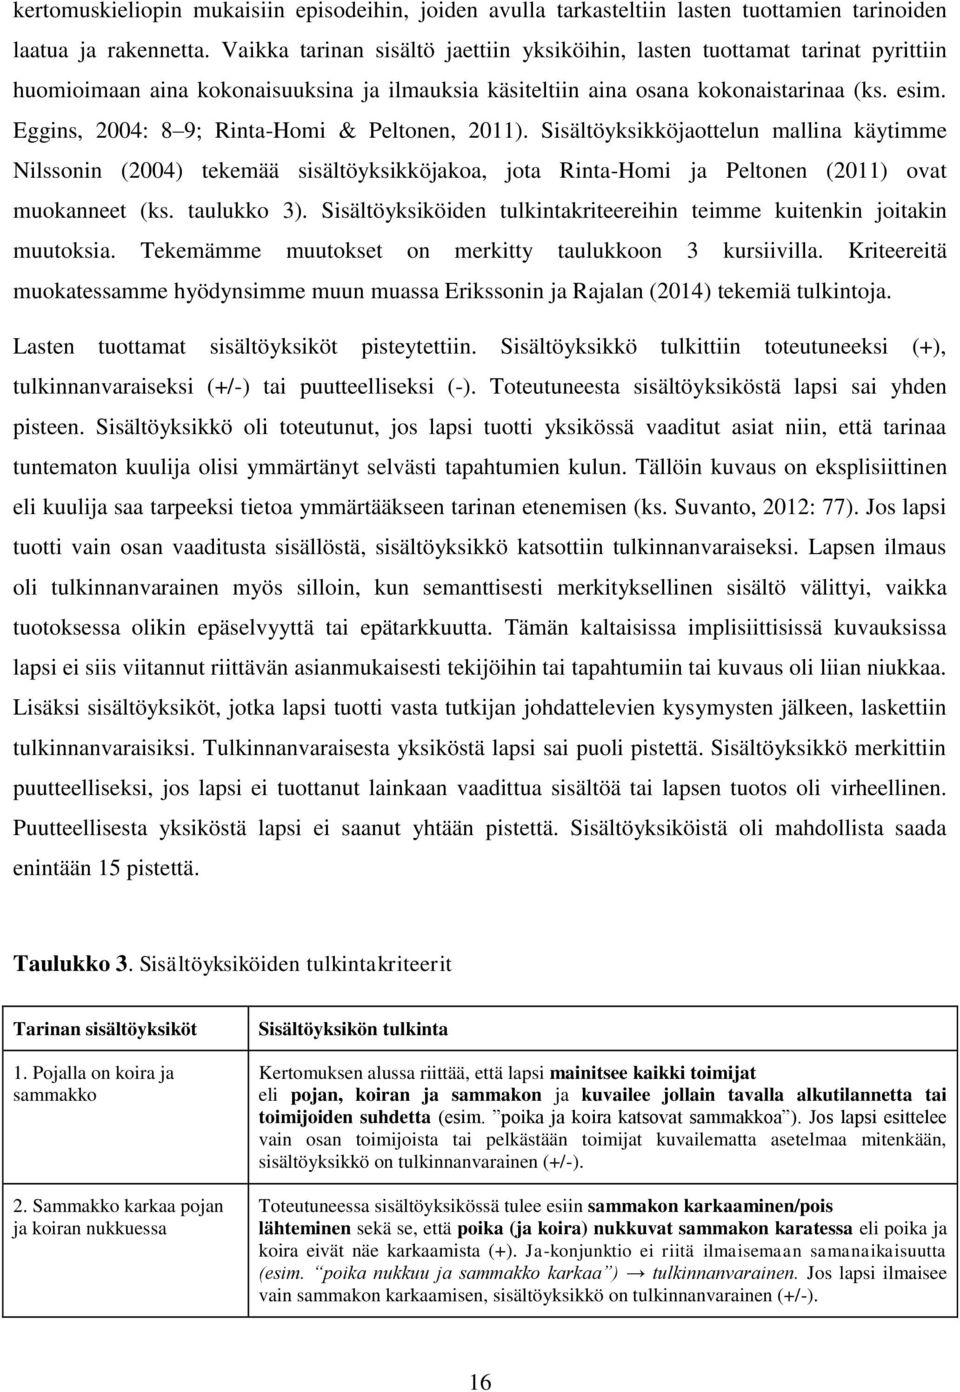 Eggins, 2004: 8 9; Rinta-Homi & Peltonen, 2011). Sisältöyksikköjaottelun mallina käytimme Nilssonin (2004) tekemää sisältöyksikköjakoa, jota Rinta-Homi ja Peltonen (2011) ovat muokanneet (ks.